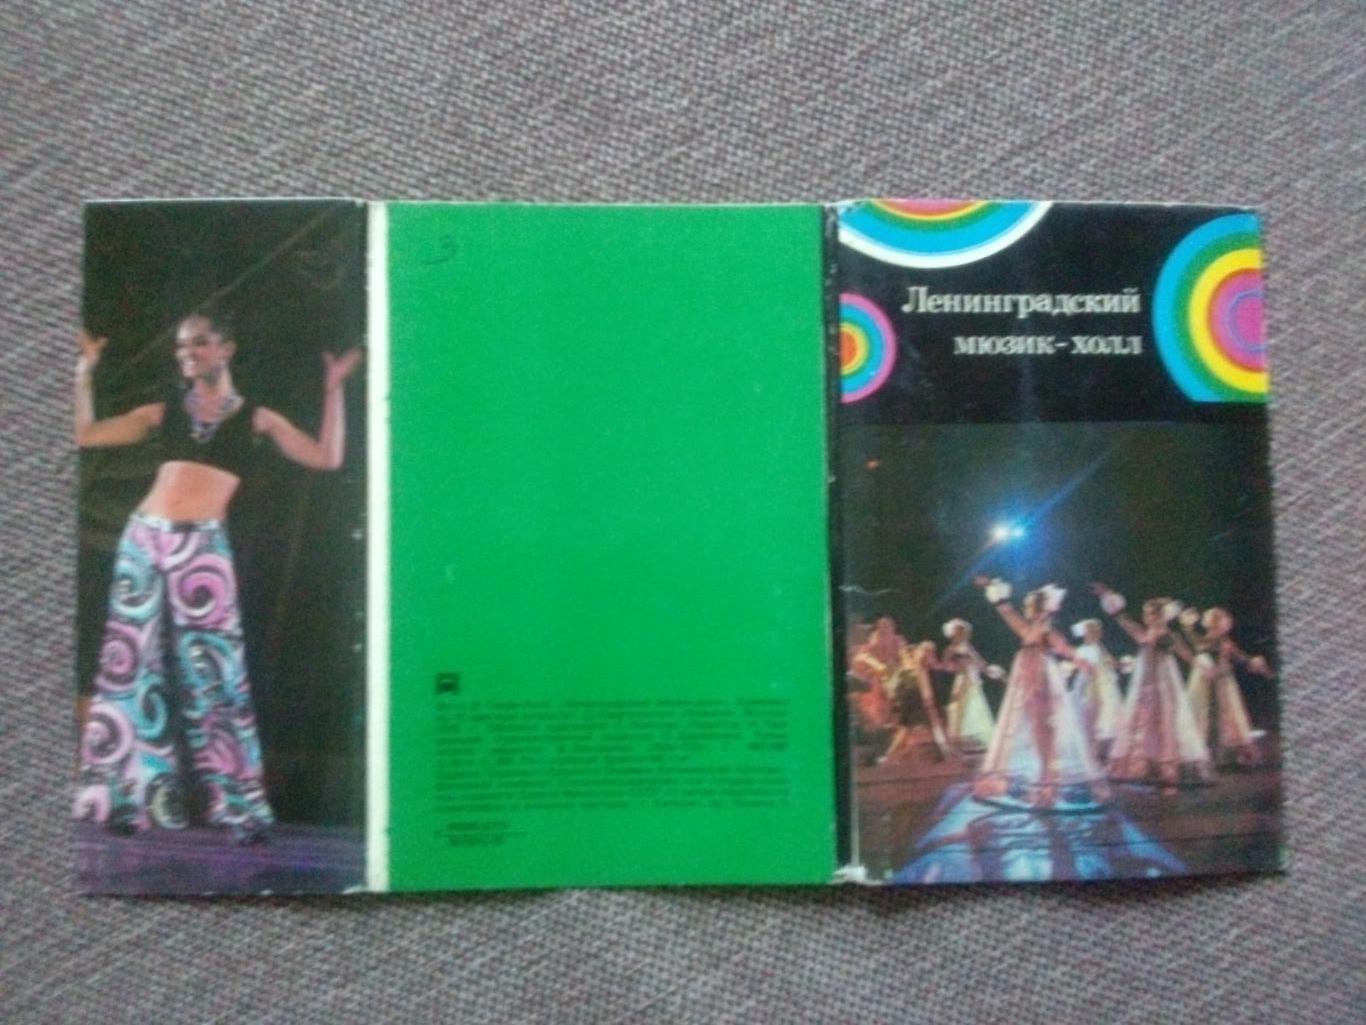 Ленинградский мюзик-холл 1975 г. полный набор - 15 открыток (Артисты эстрады) 1